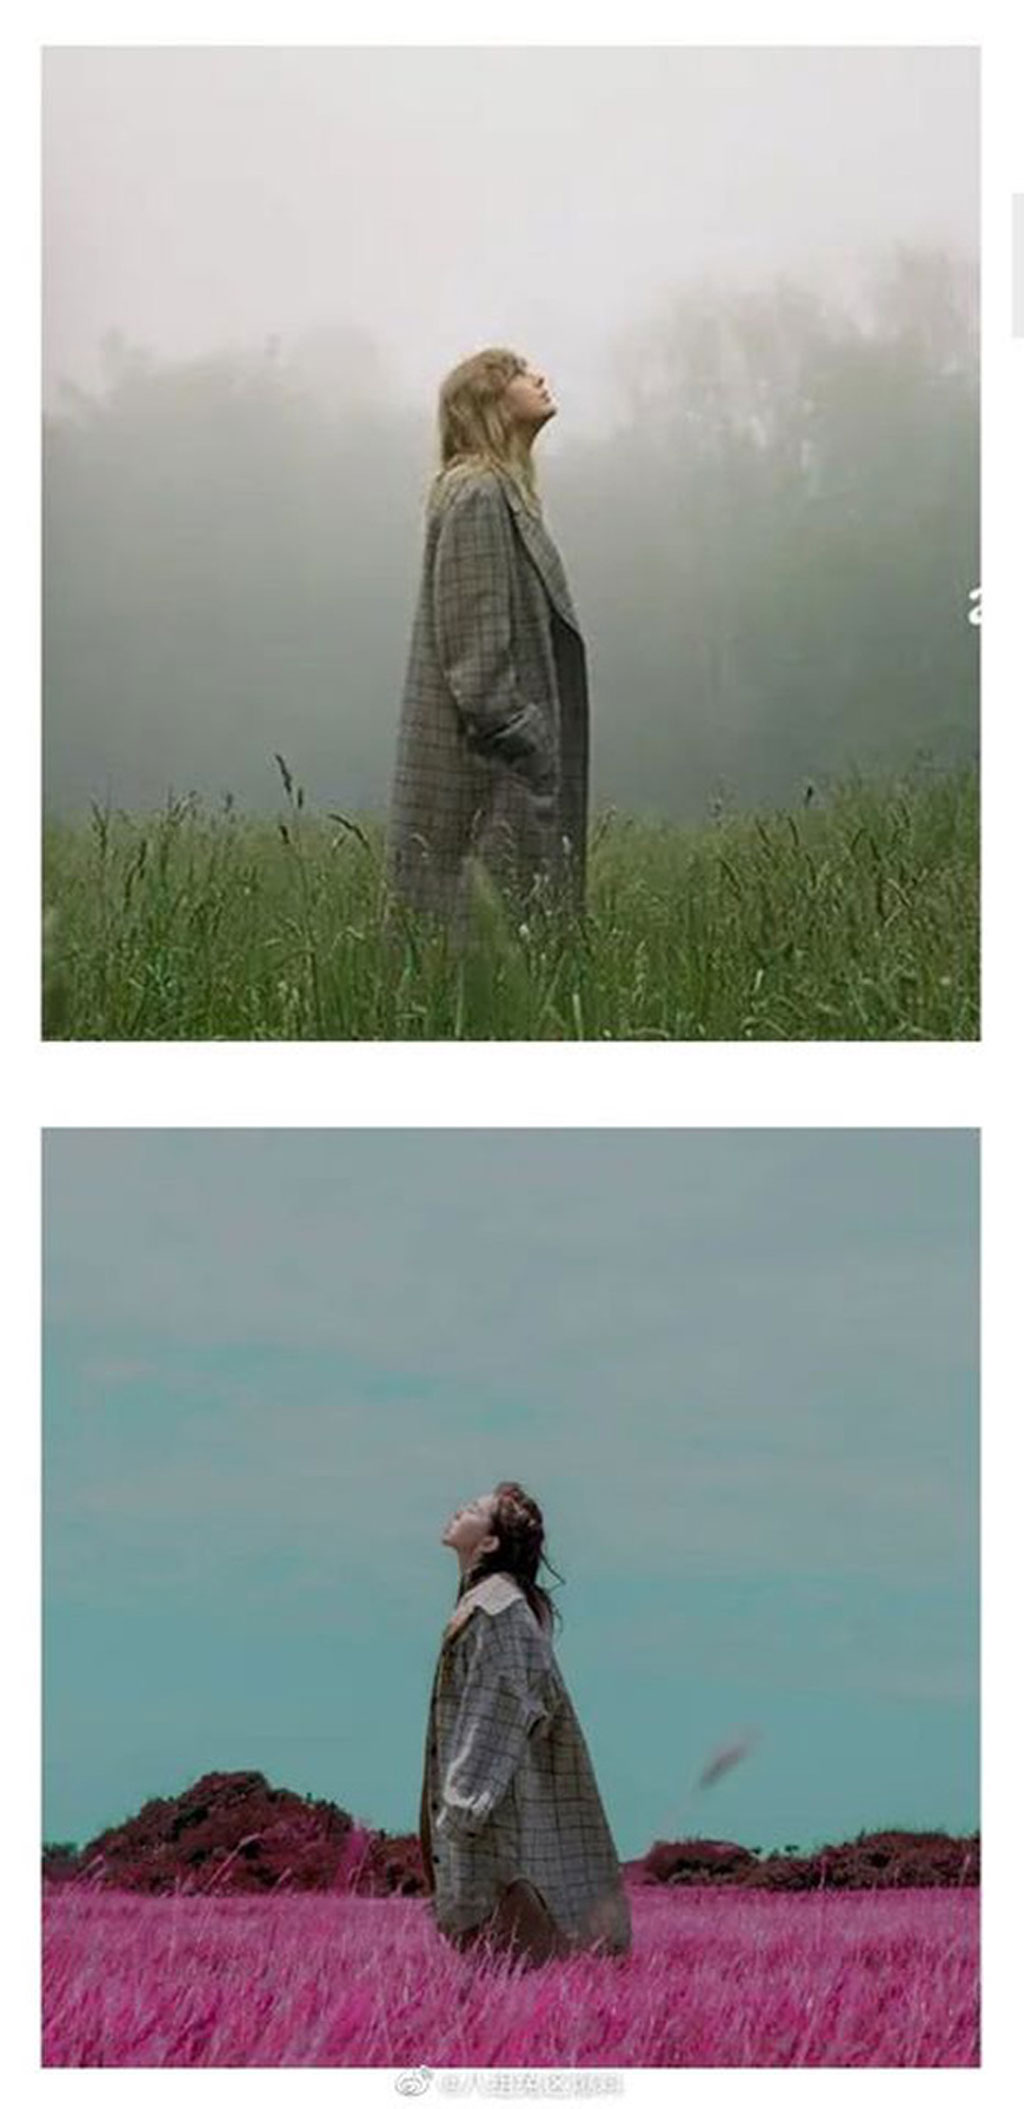 Bộ ảnh quảng bá album folklore của Taylor Swift dính nghi vấn đạo nhái hình ảnh trong MV của Đặng Tử Kỳ2